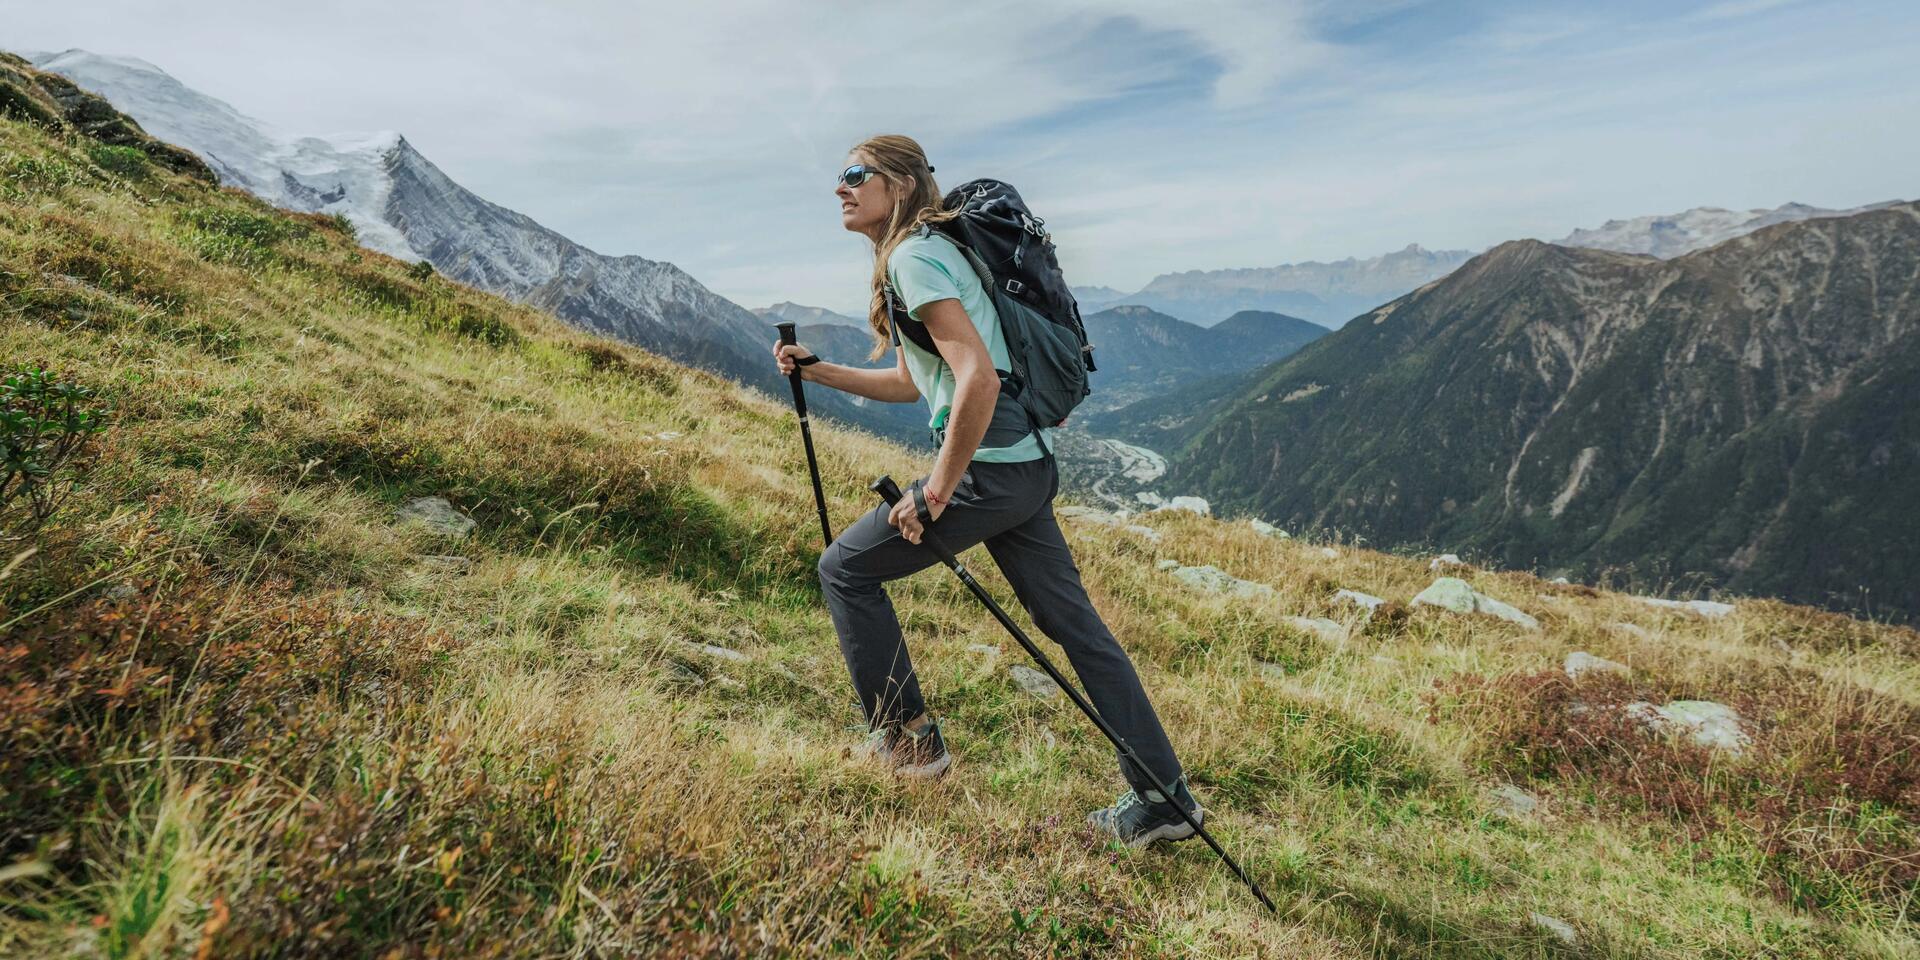 kobieta wędrująca po górach z kijkami trekkingowymi